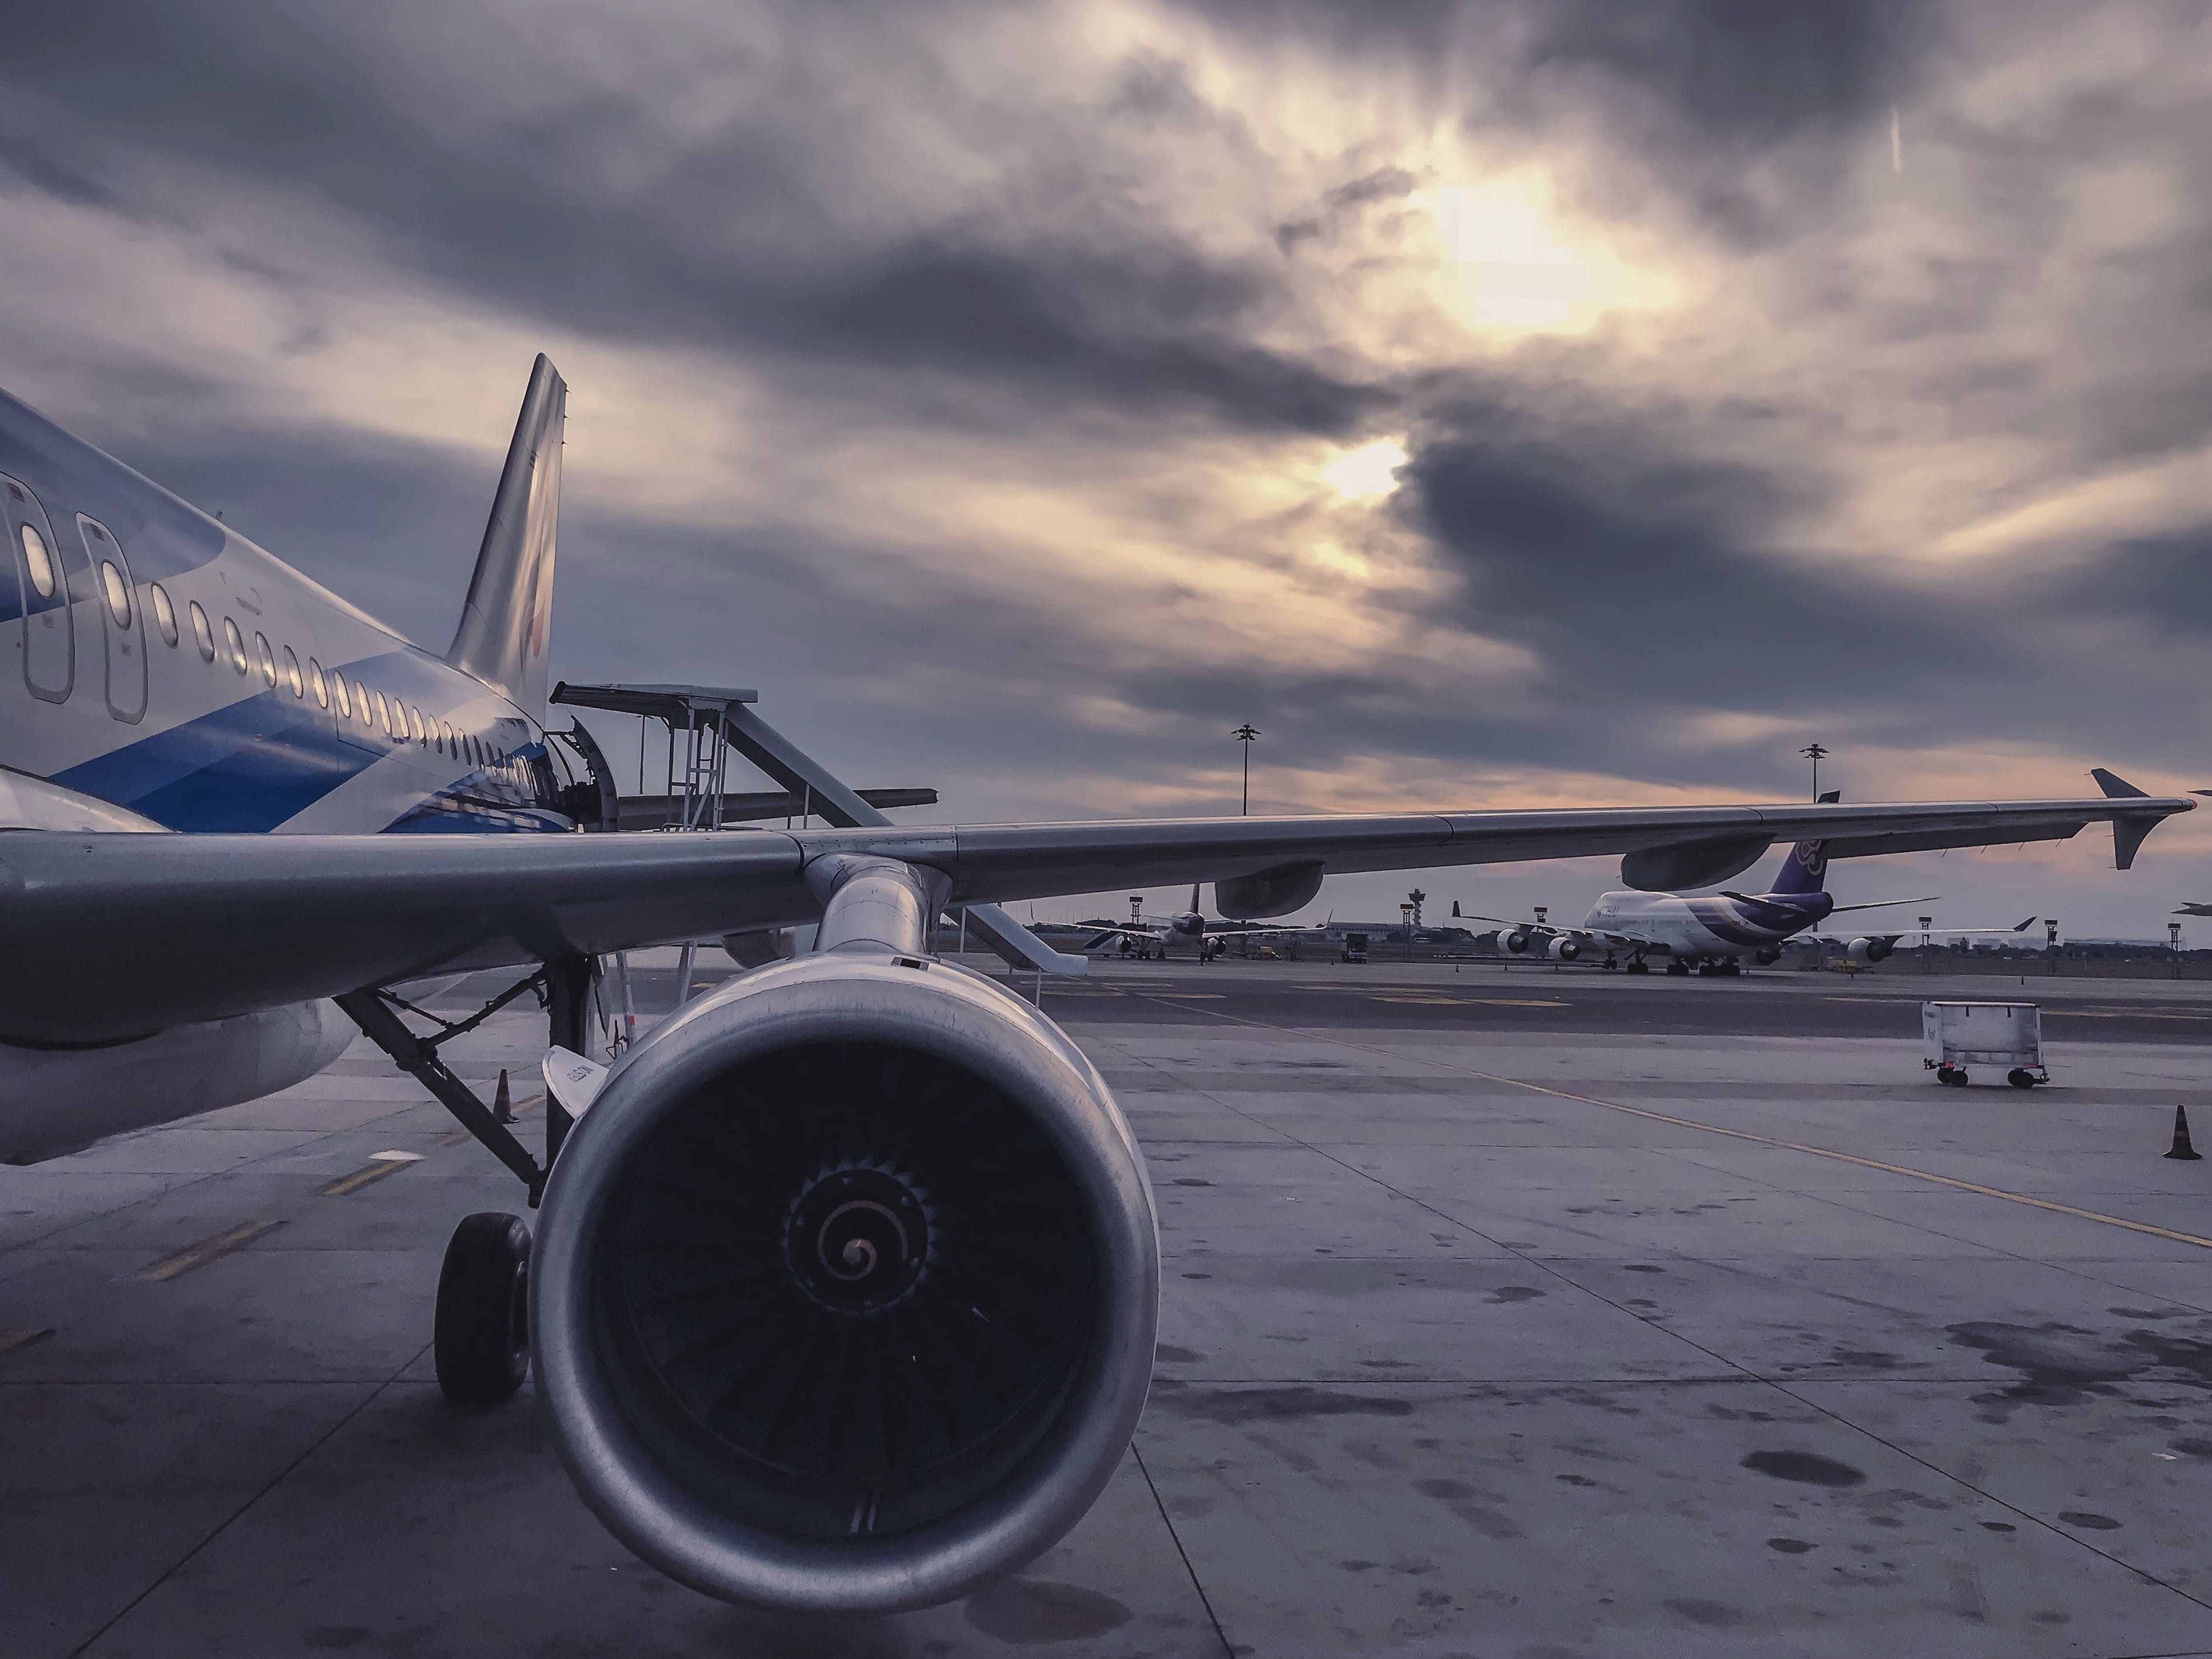 Havacılık Hukuku'nda Sıkça Karşılaşılan Davalar ve Hukuki İşlemler